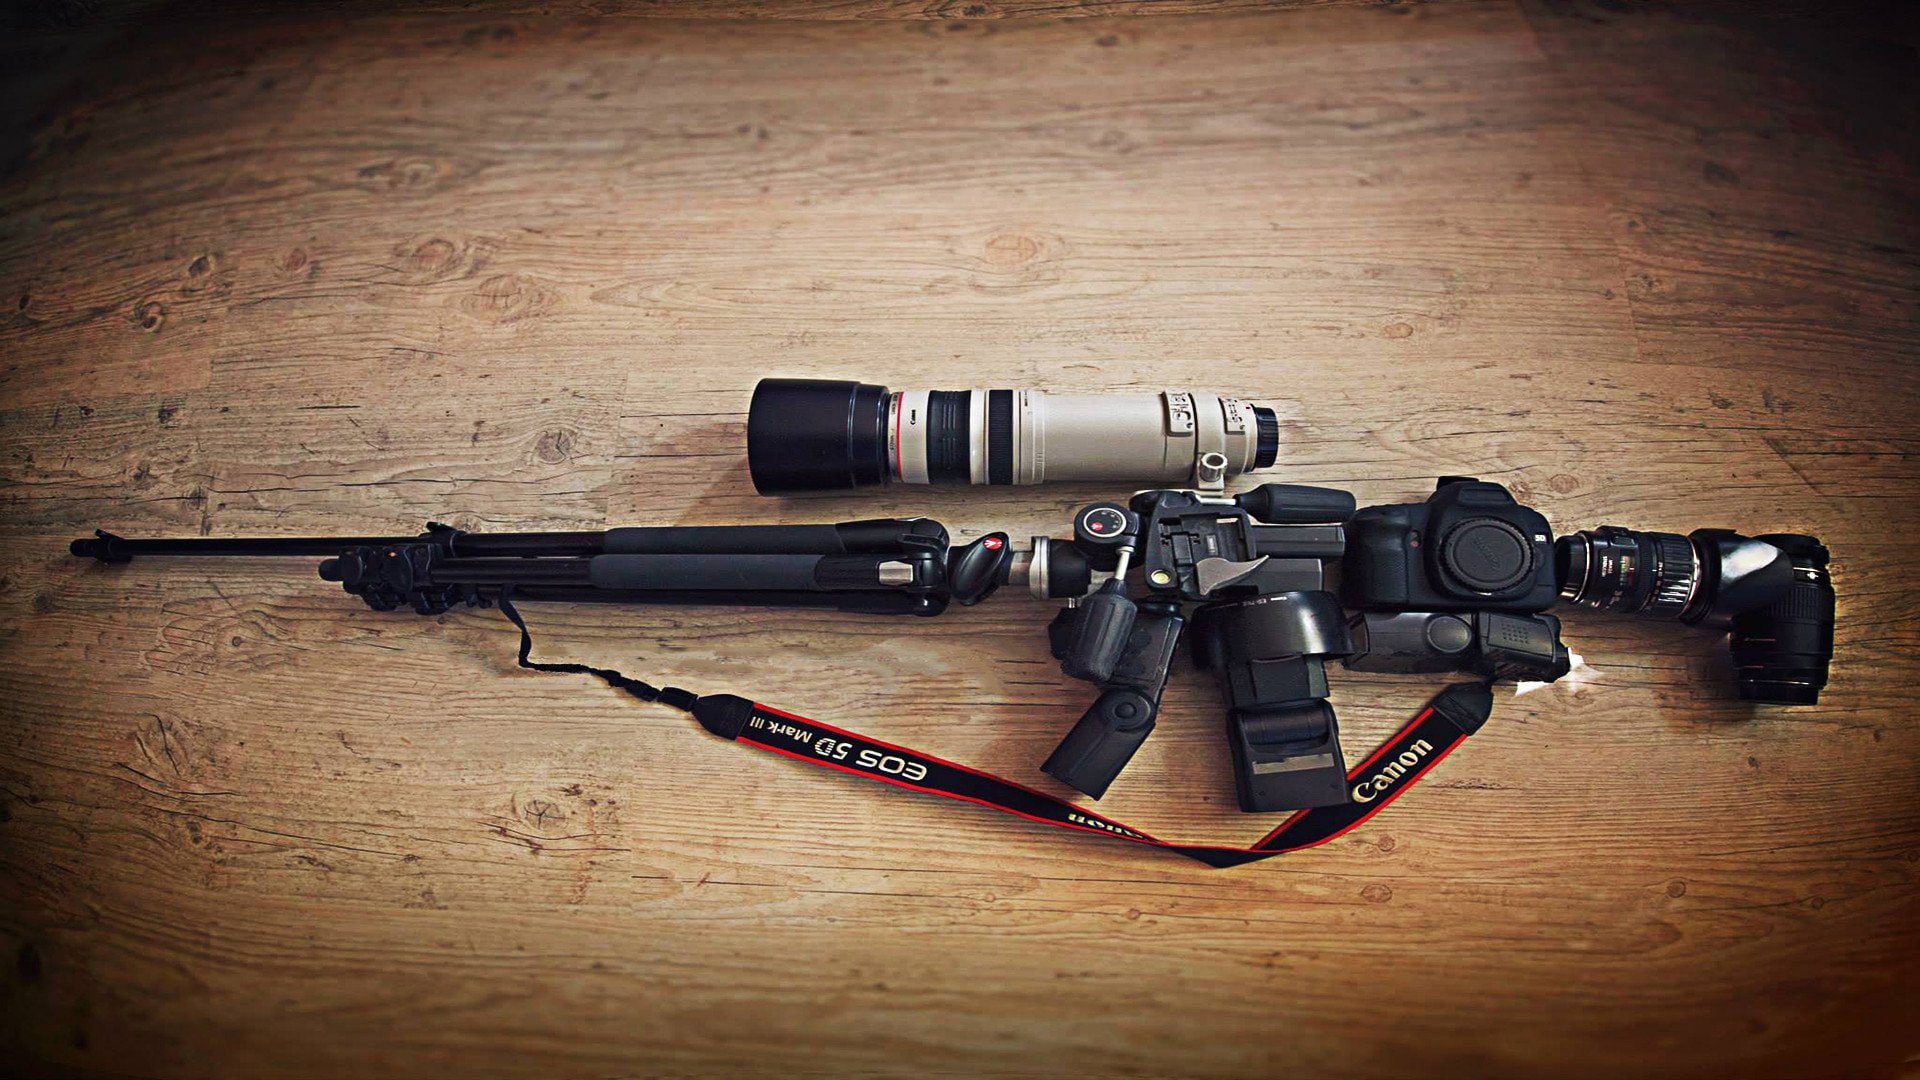 camera canon lens weapon rifles tripod sniper rifle manfrotto